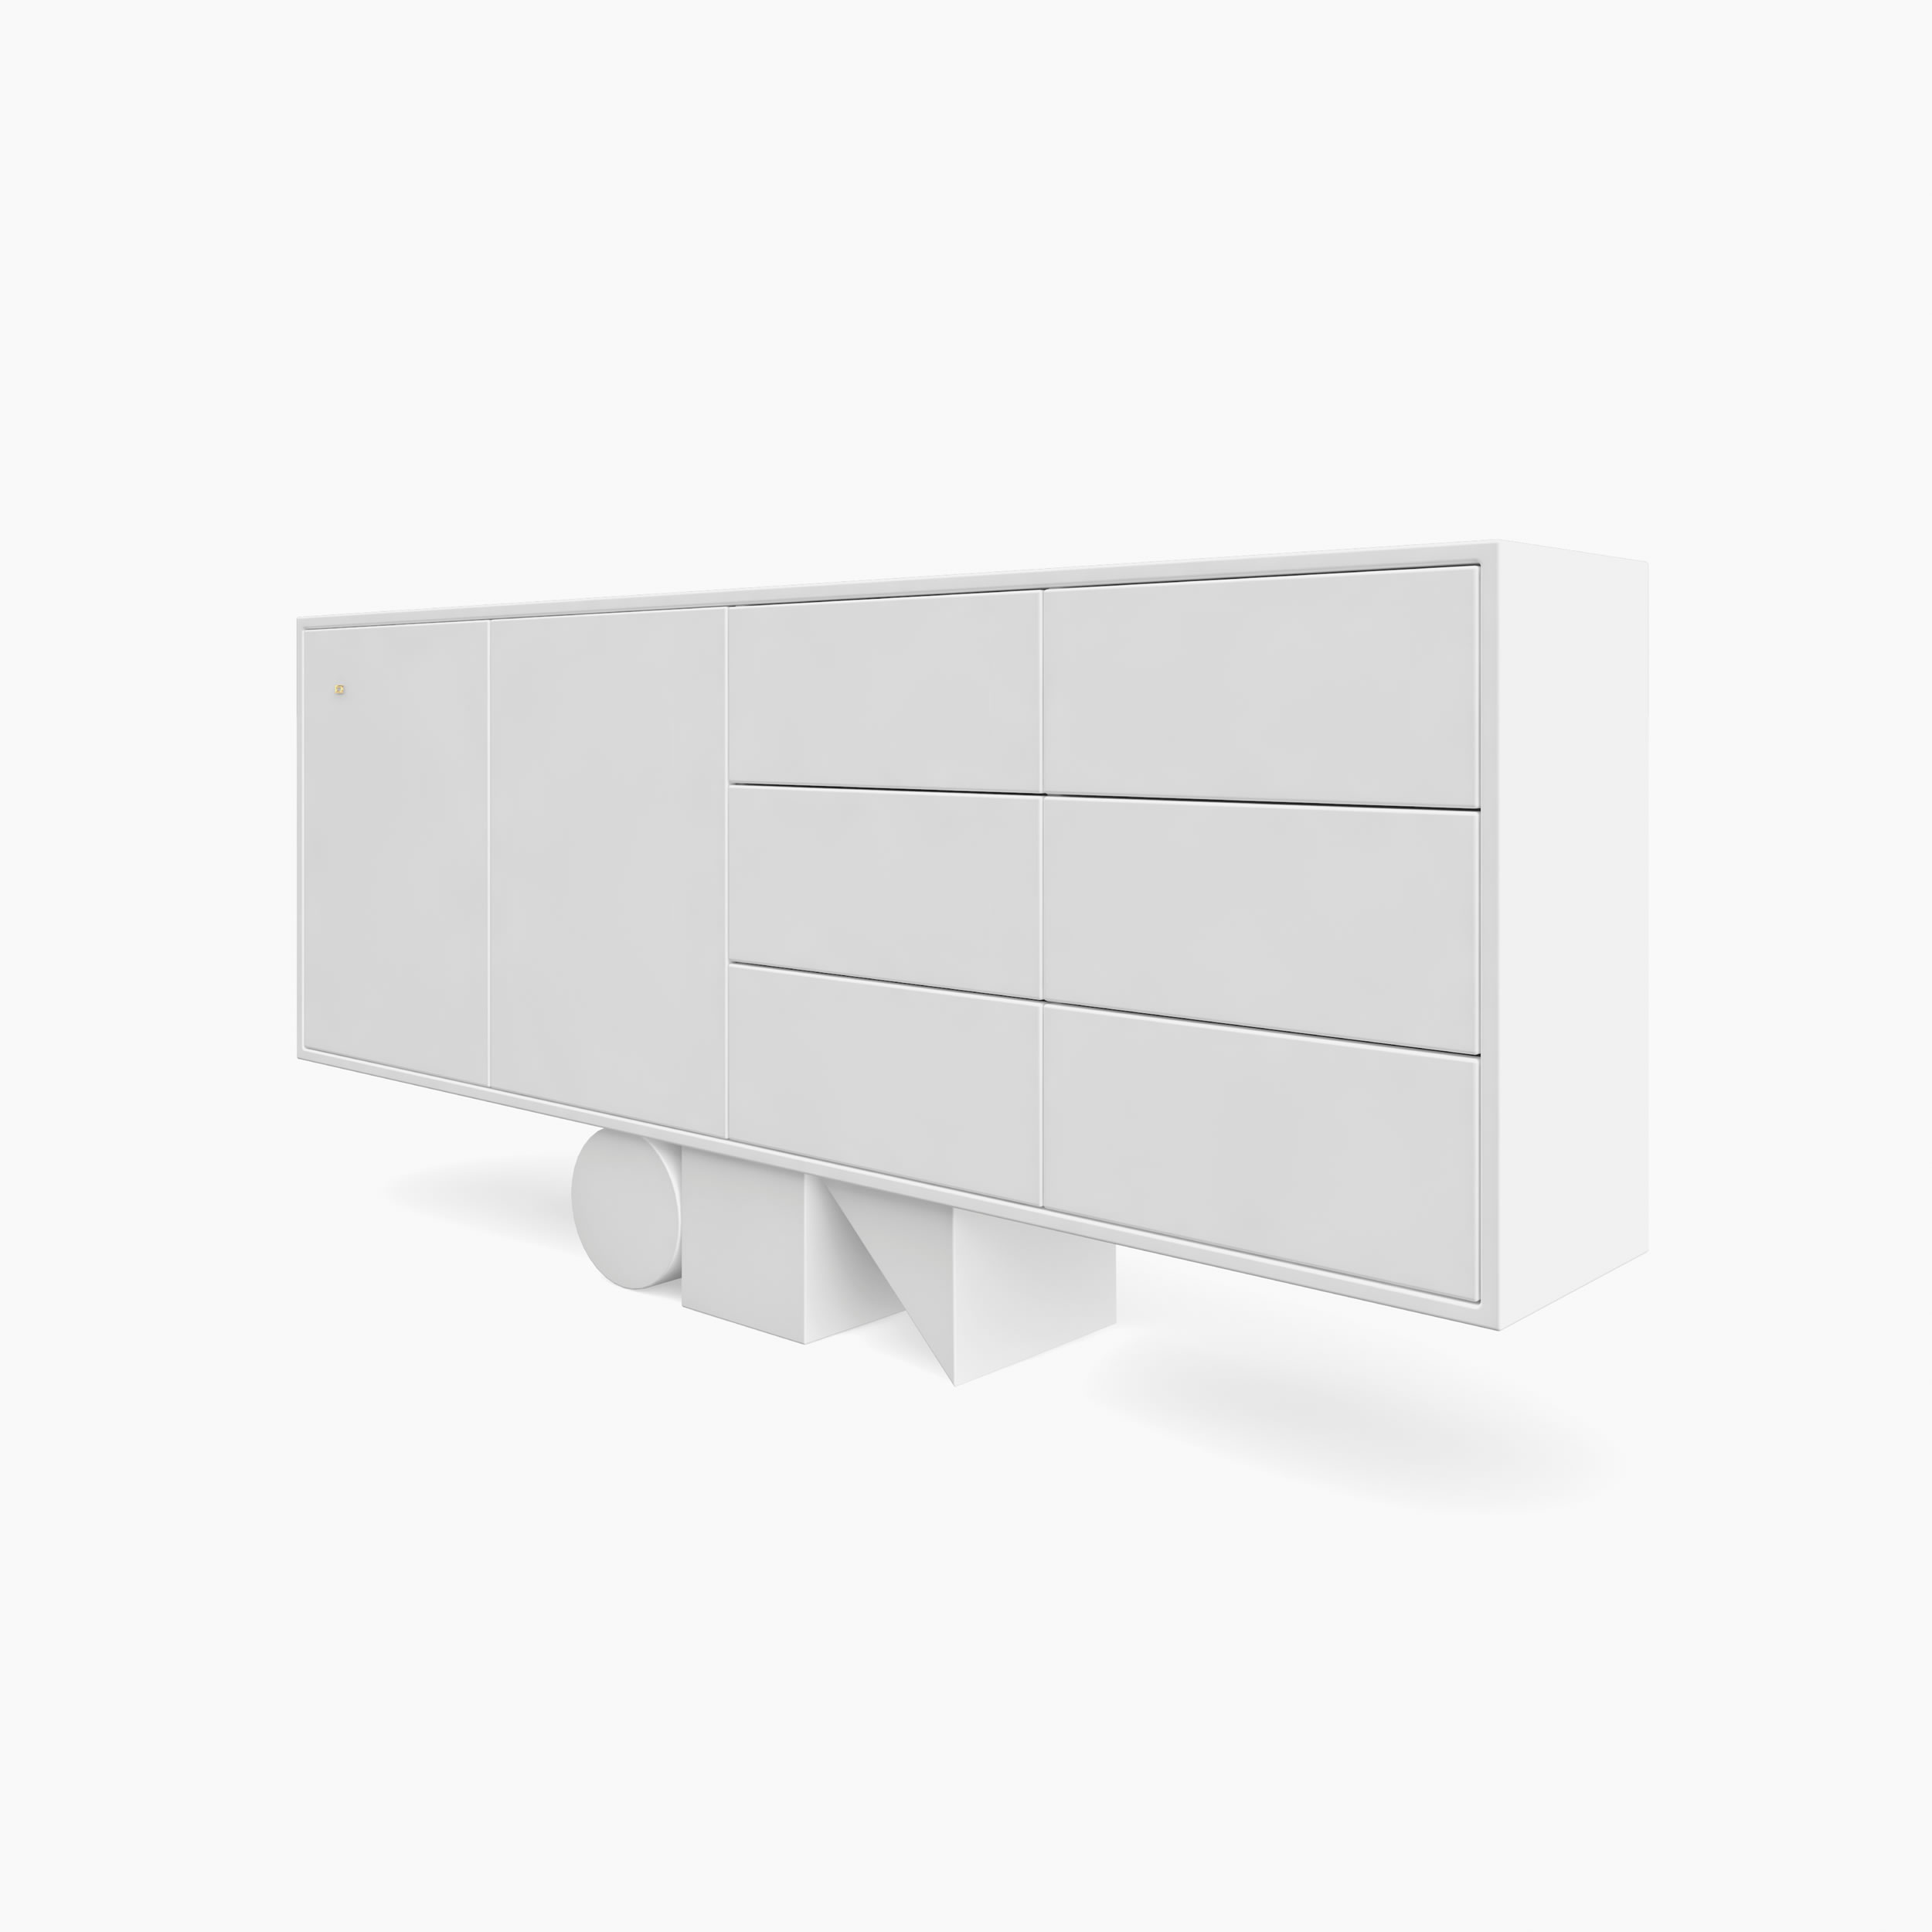 Sideboard wuerfel prisma zylinder weiss designcrush Buero interior home Sideboards FS 4 FELIX SCHWAKE